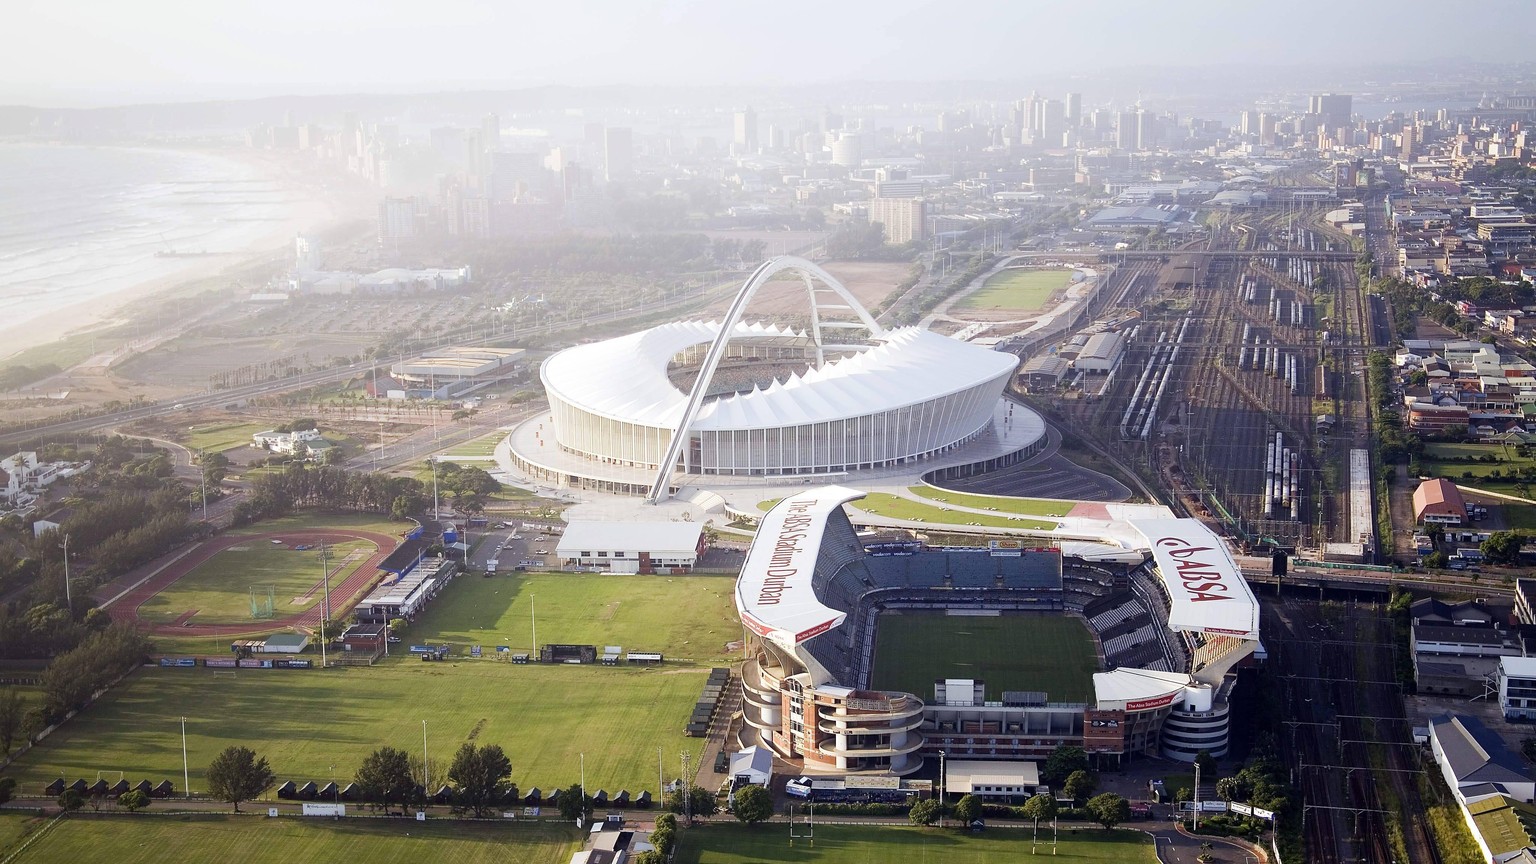 Bildnummer: 05436633 Datum: 31.01.2010 Copyright: imago/PR
Luftaufnahme Moses Mabhida Stadium in Durban, Austragungsort der WM 2010 in Südafrika; Vdig, quer, Stadion, Fußballstadion, außen, Außenansic ...